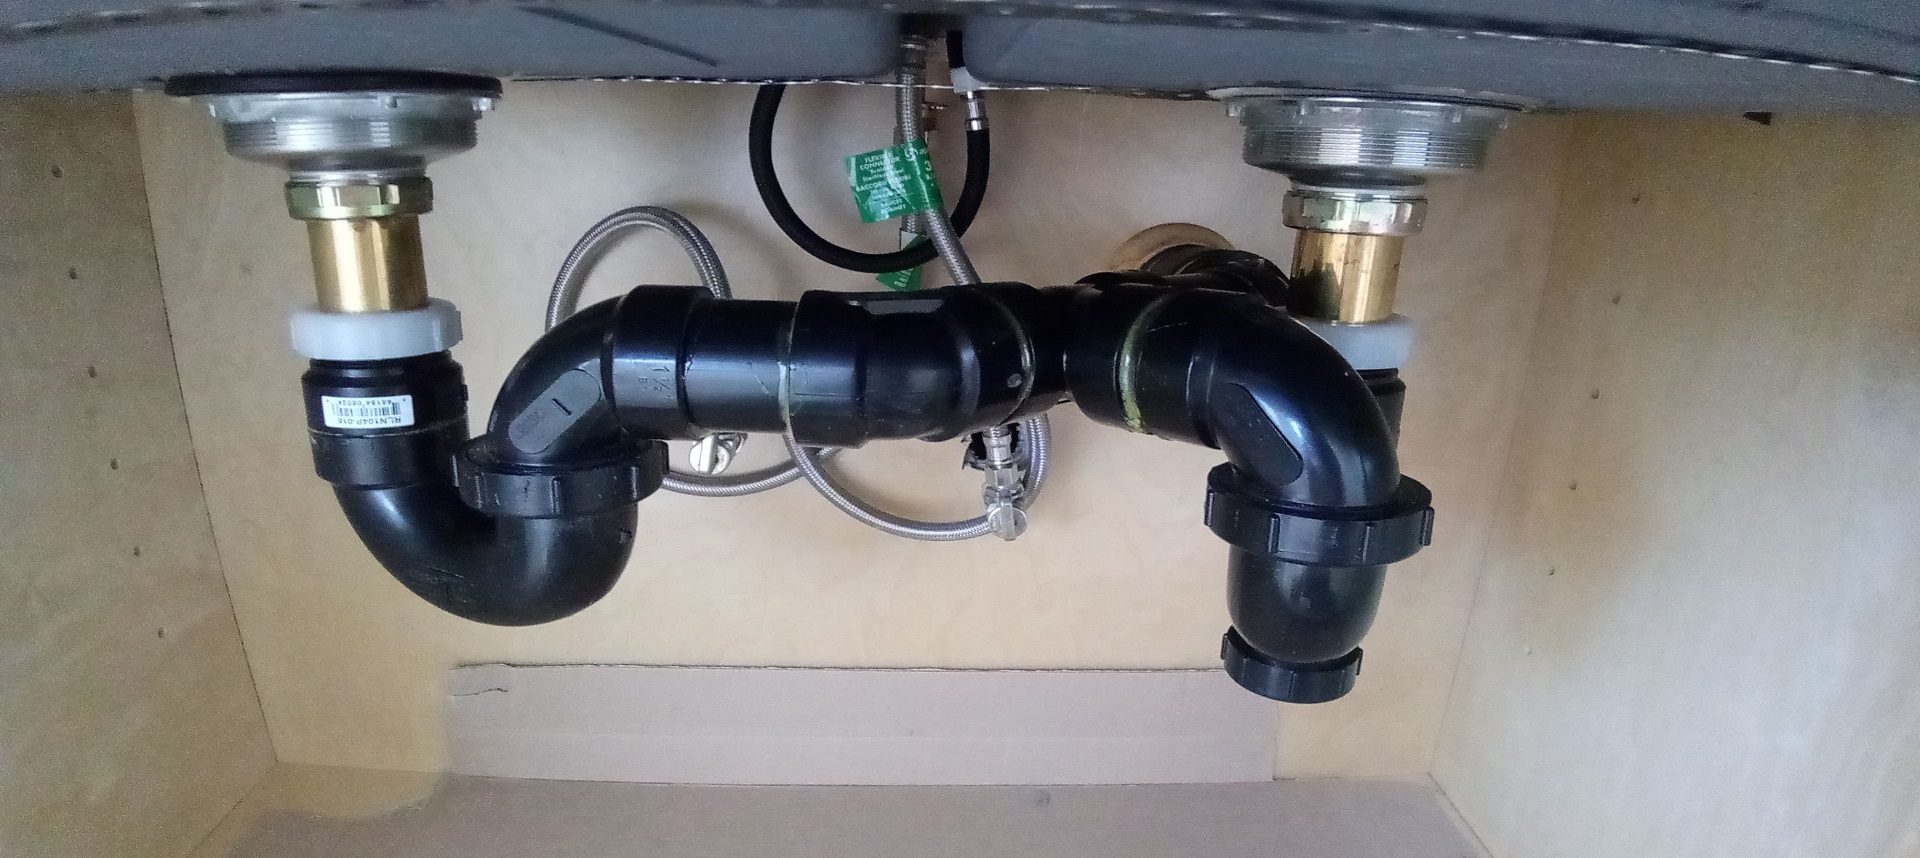 plumbing supply kitchen sink screen richardson tx